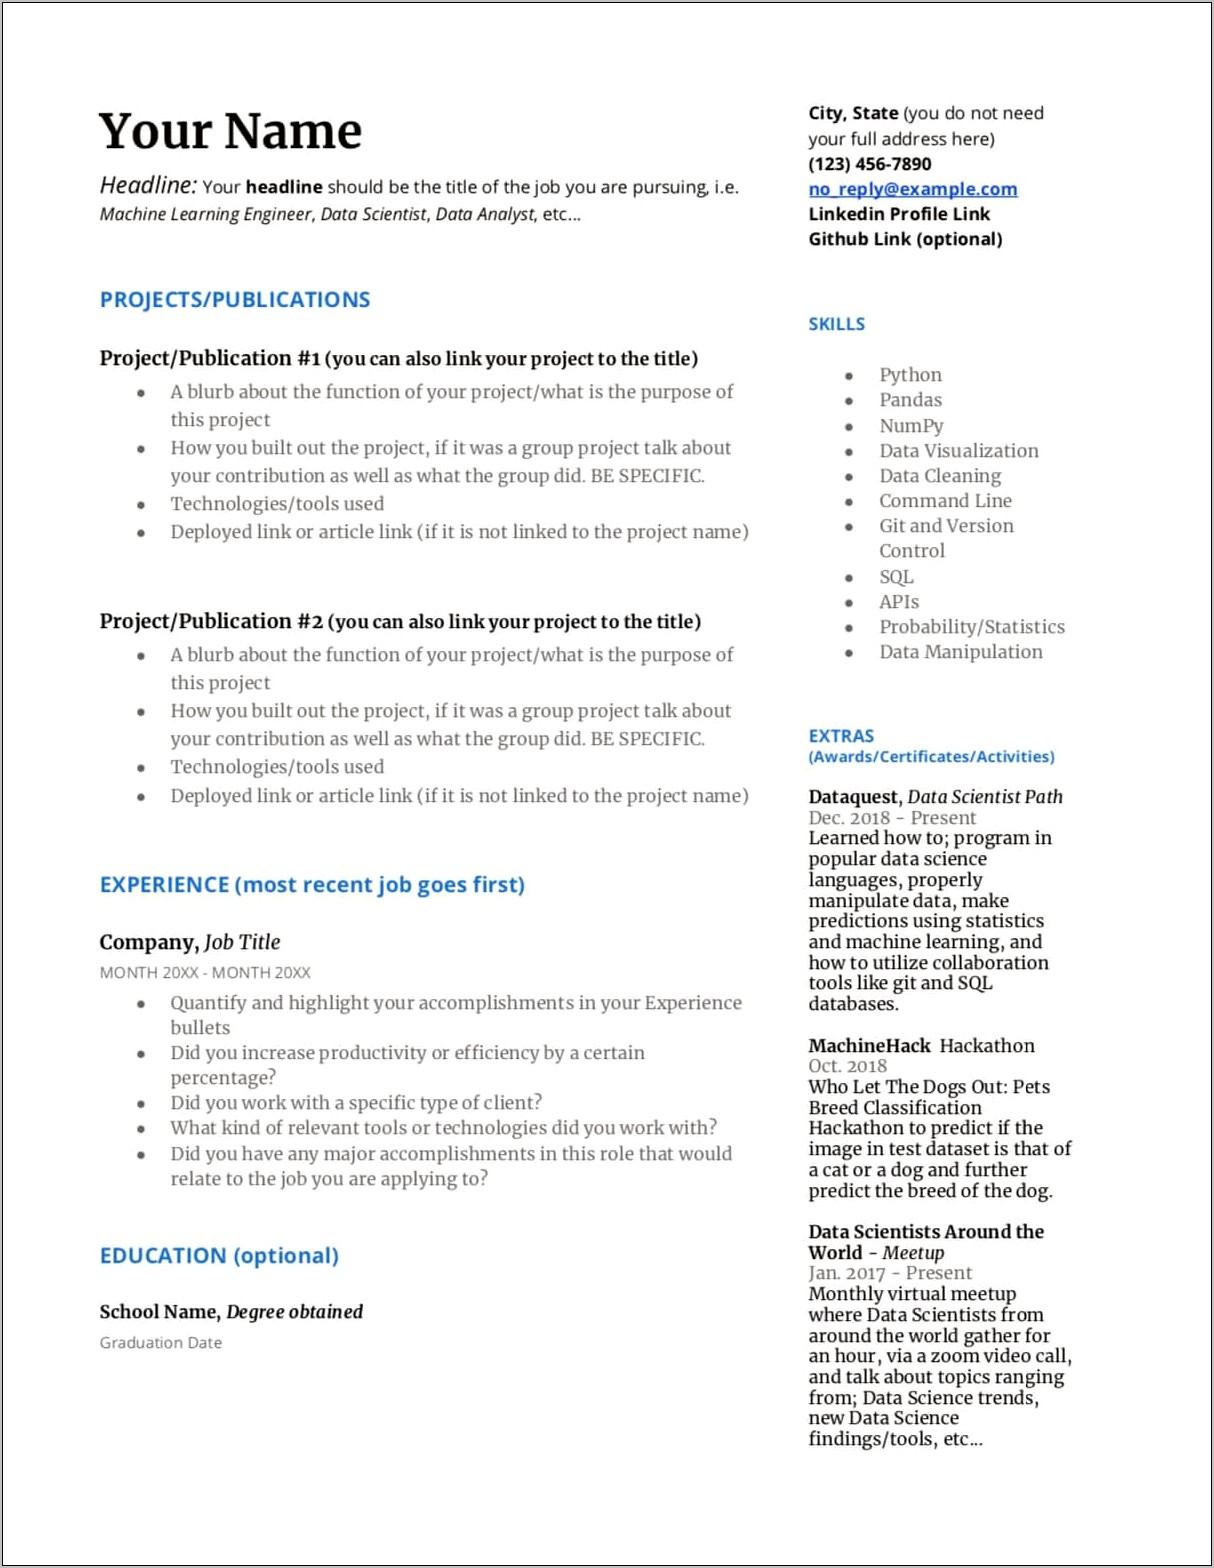 Resume Format For Google Jobs